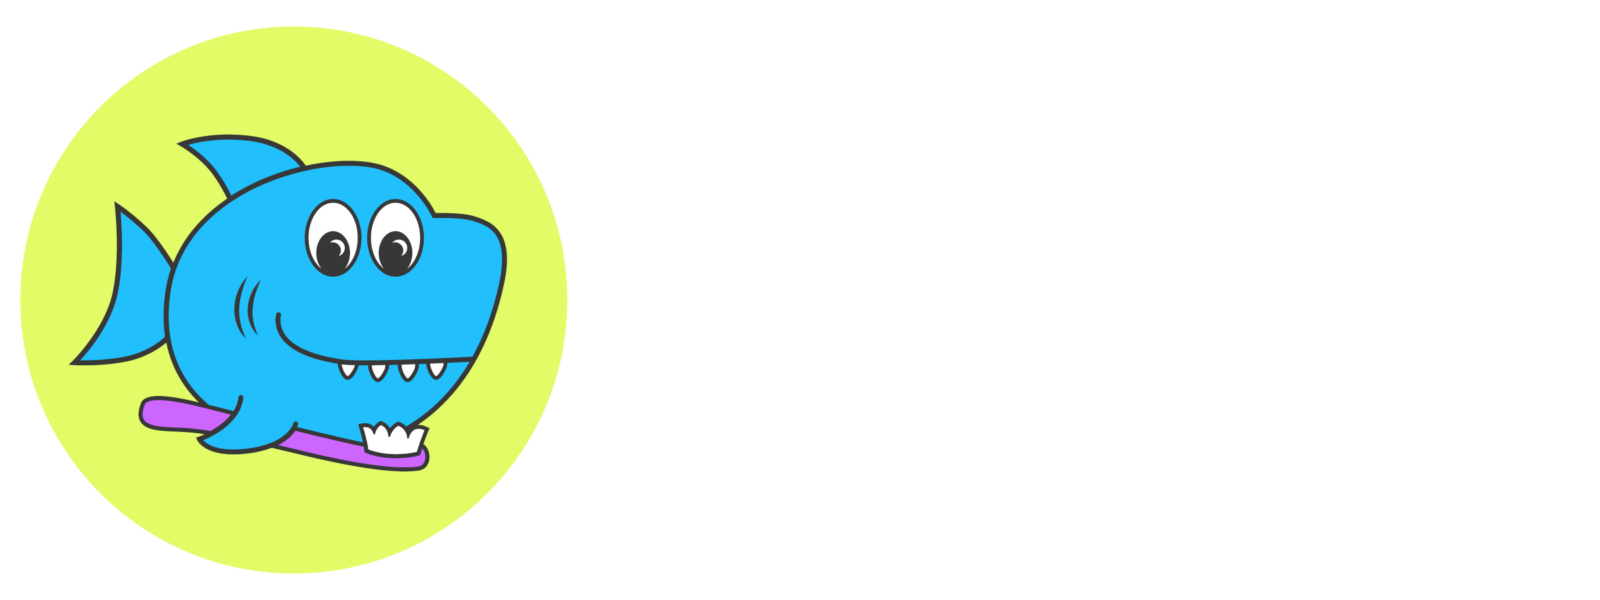 Alderwood children's dentistry - Logo